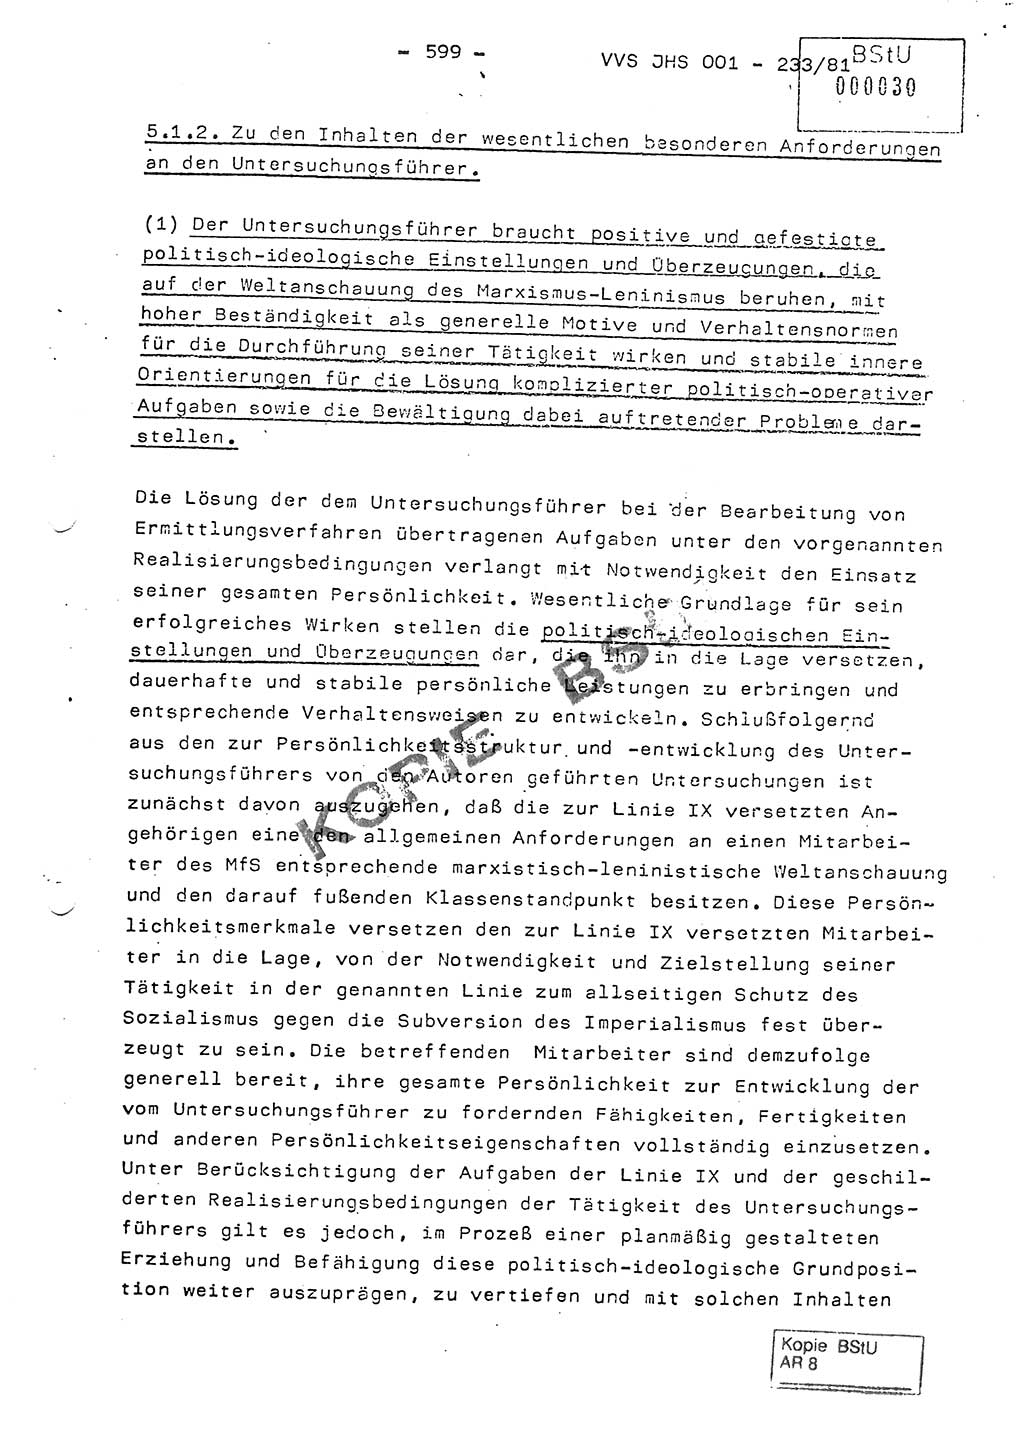 Dissertation Oberstleutnant Horst Zank (JHS), Oberstleutnant Dr. Karl-Heinz Knoblauch (JHS), Oberstleutnant Gustav-Adolf Kowalewski (HA Ⅸ), Oberstleutnant Wolfgang Plötner (HA Ⅸ), Ministerium für Staatssicherheit (MfS) [Deutsche Demokratische Republik (DDR)], Juristische Hochschule (JHS), Vertrauliche Verschlußsache (VVS) o001-233/81, Potsdam 1981, Blatt 599 (Diss. MfS DDR JHS VVS o001-233/81 1981, Bl. 599)